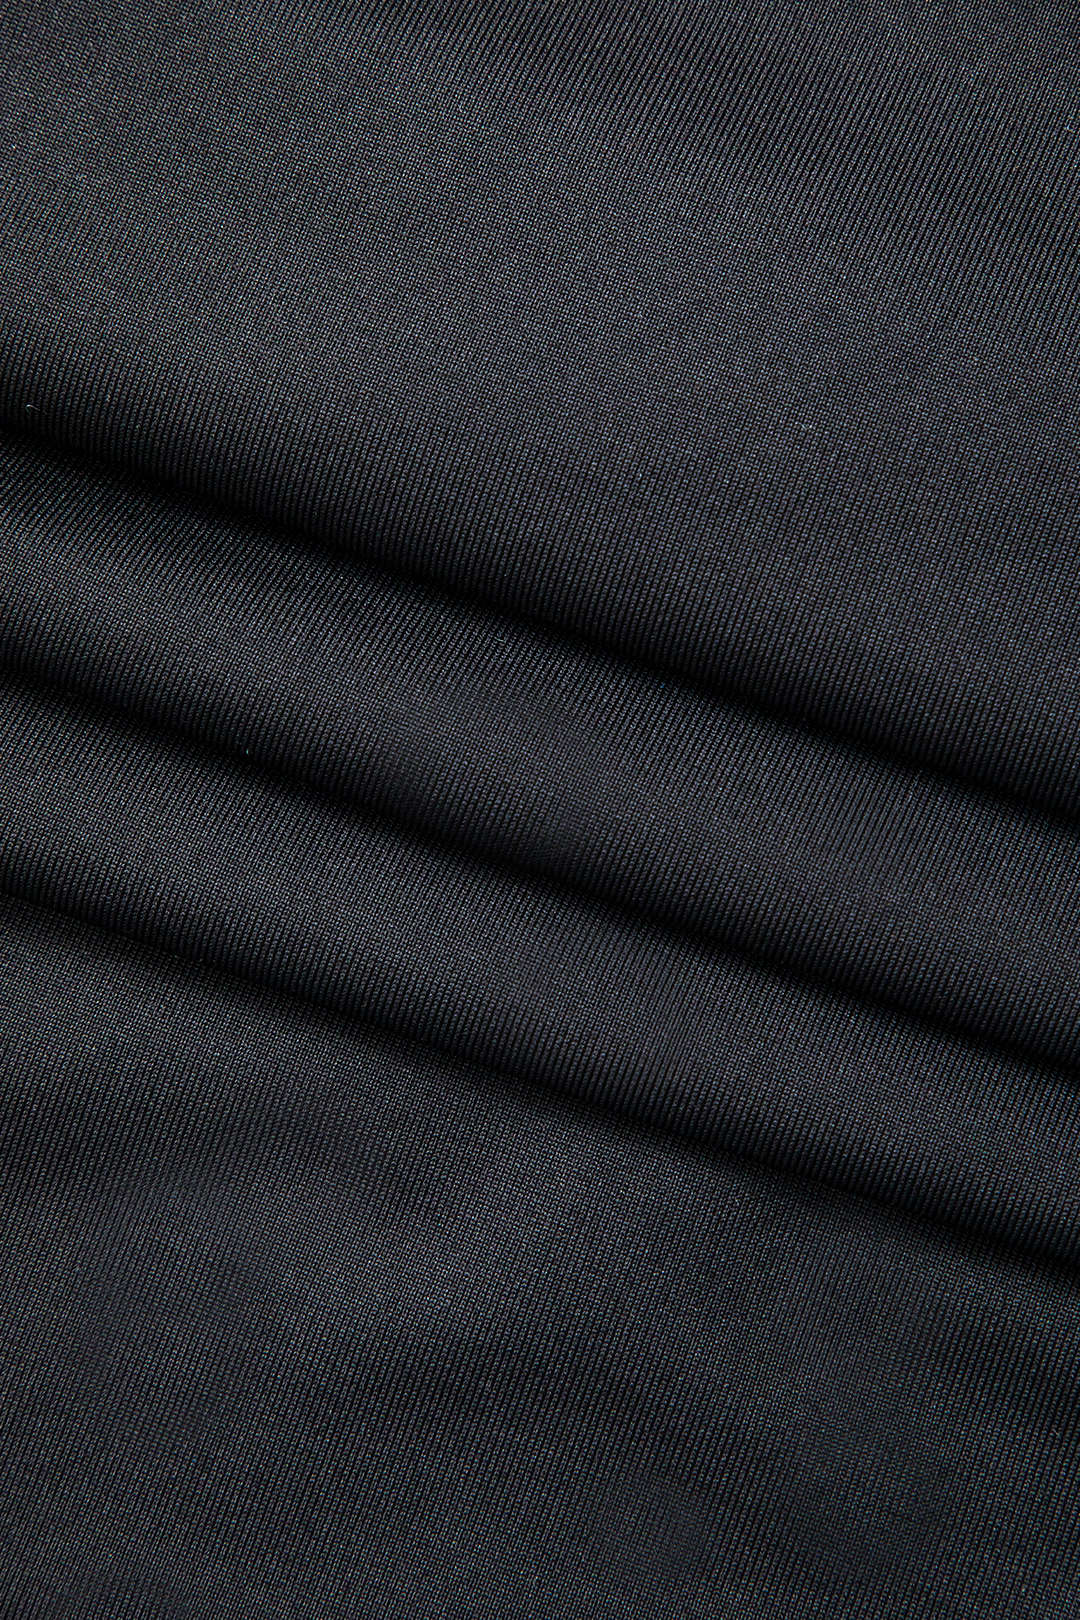 Asymmetrical Long Sleeve Maxi Dress